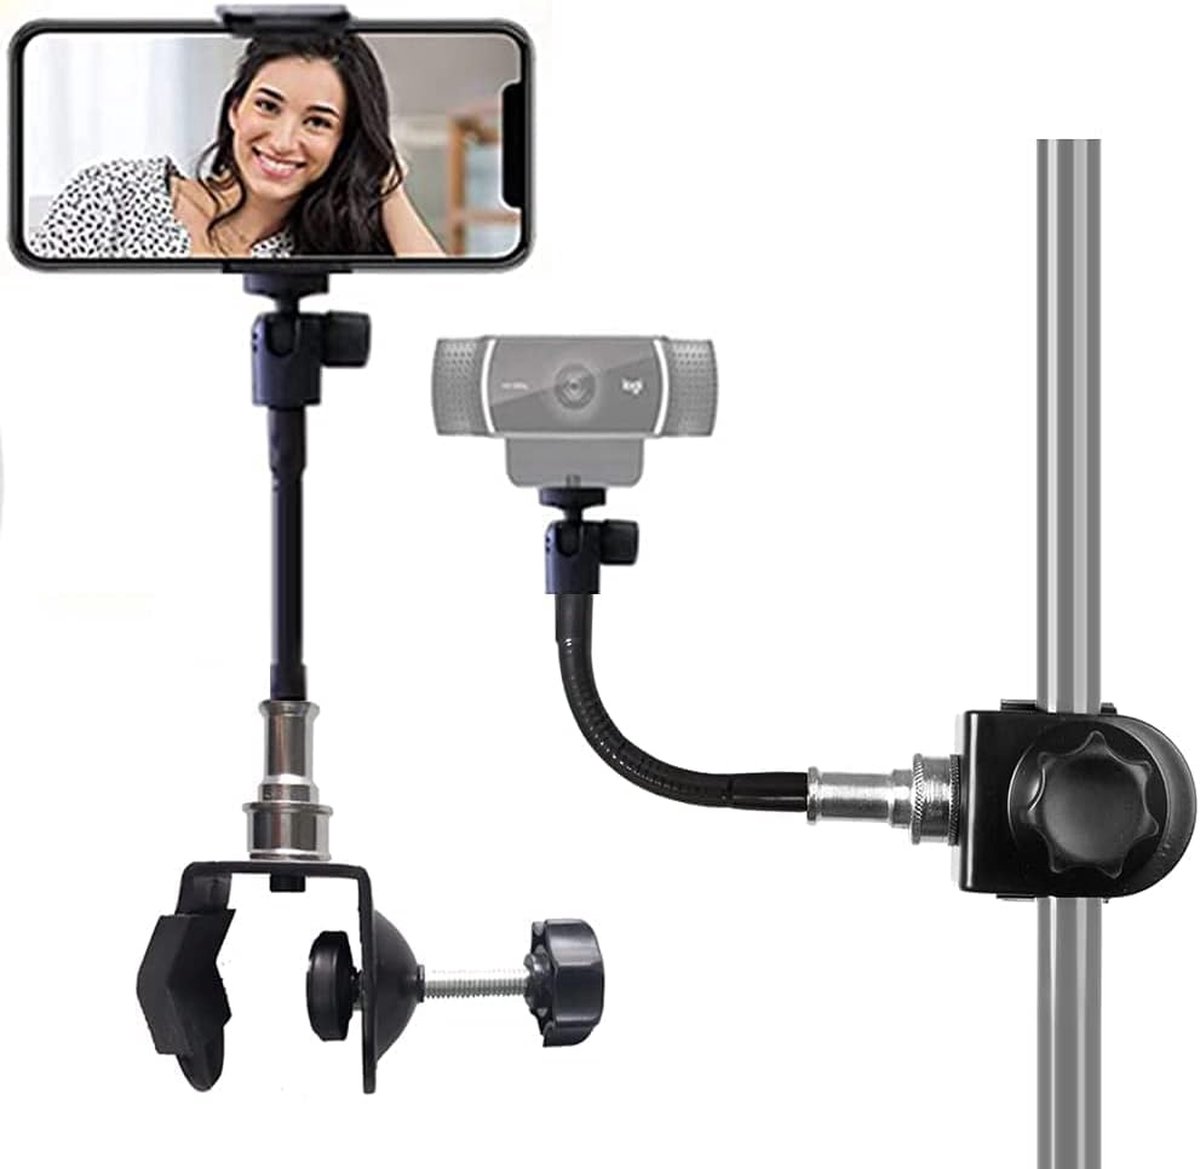 Mini-Groove Neck Super Clamp Mount Webcam standaard telefoonhouder camerahouder Muziekstandaardhouder voor mobiele telefoons, Logitech Webcam C920 C930, LED-verlichting, flitser enz. (1/4 inch schroefdraad)